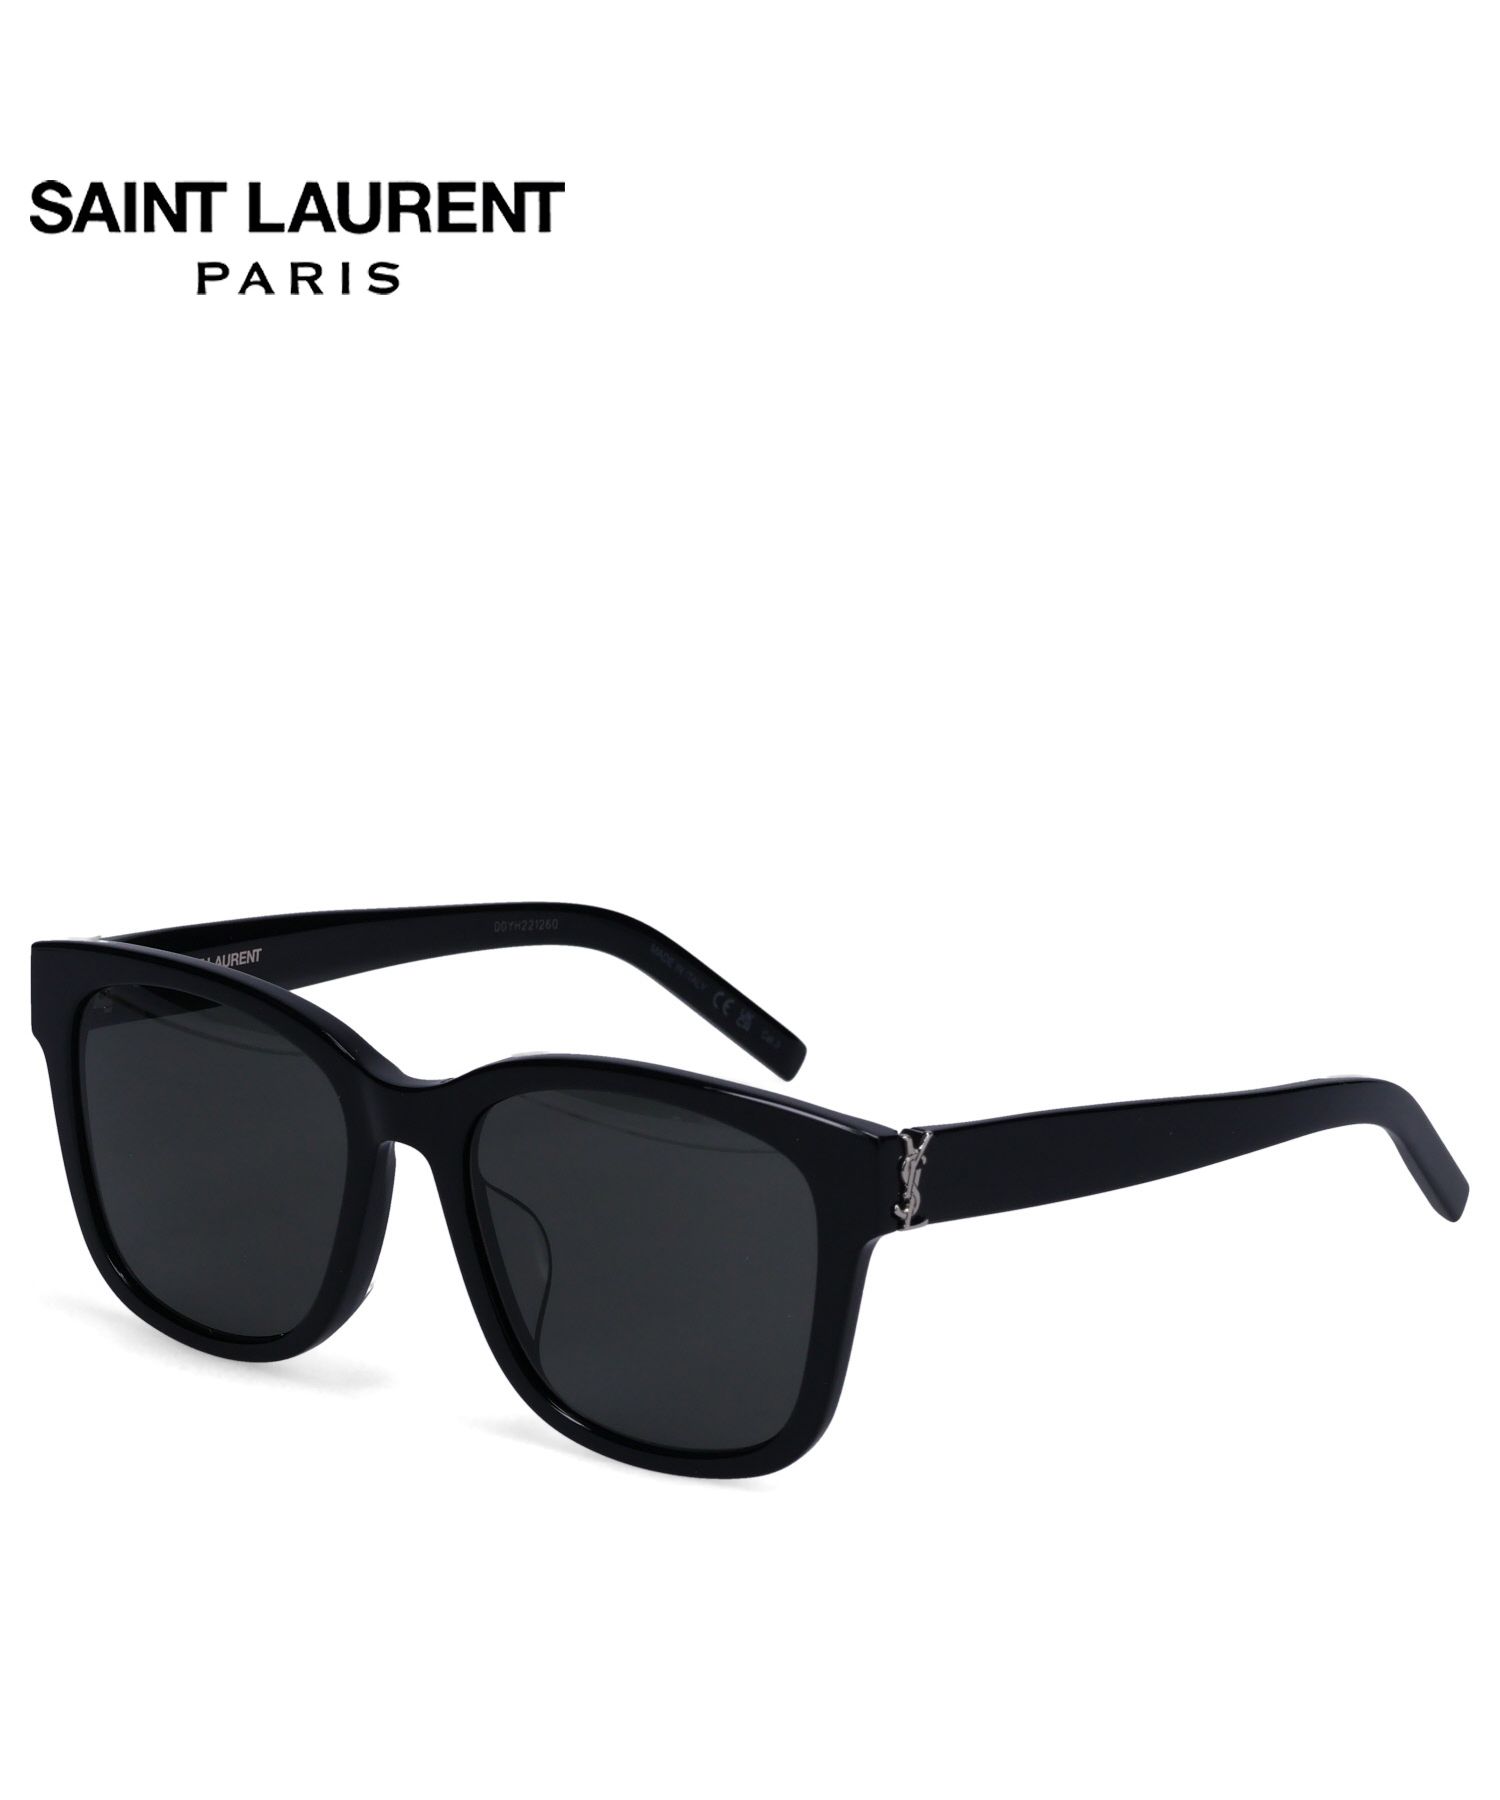 サンローラン パリ SAINT LAURENT PARIS サングラス メンズ レディース アジアンフィット UVカット 紫外線対策  SUNGLASSES ブラ